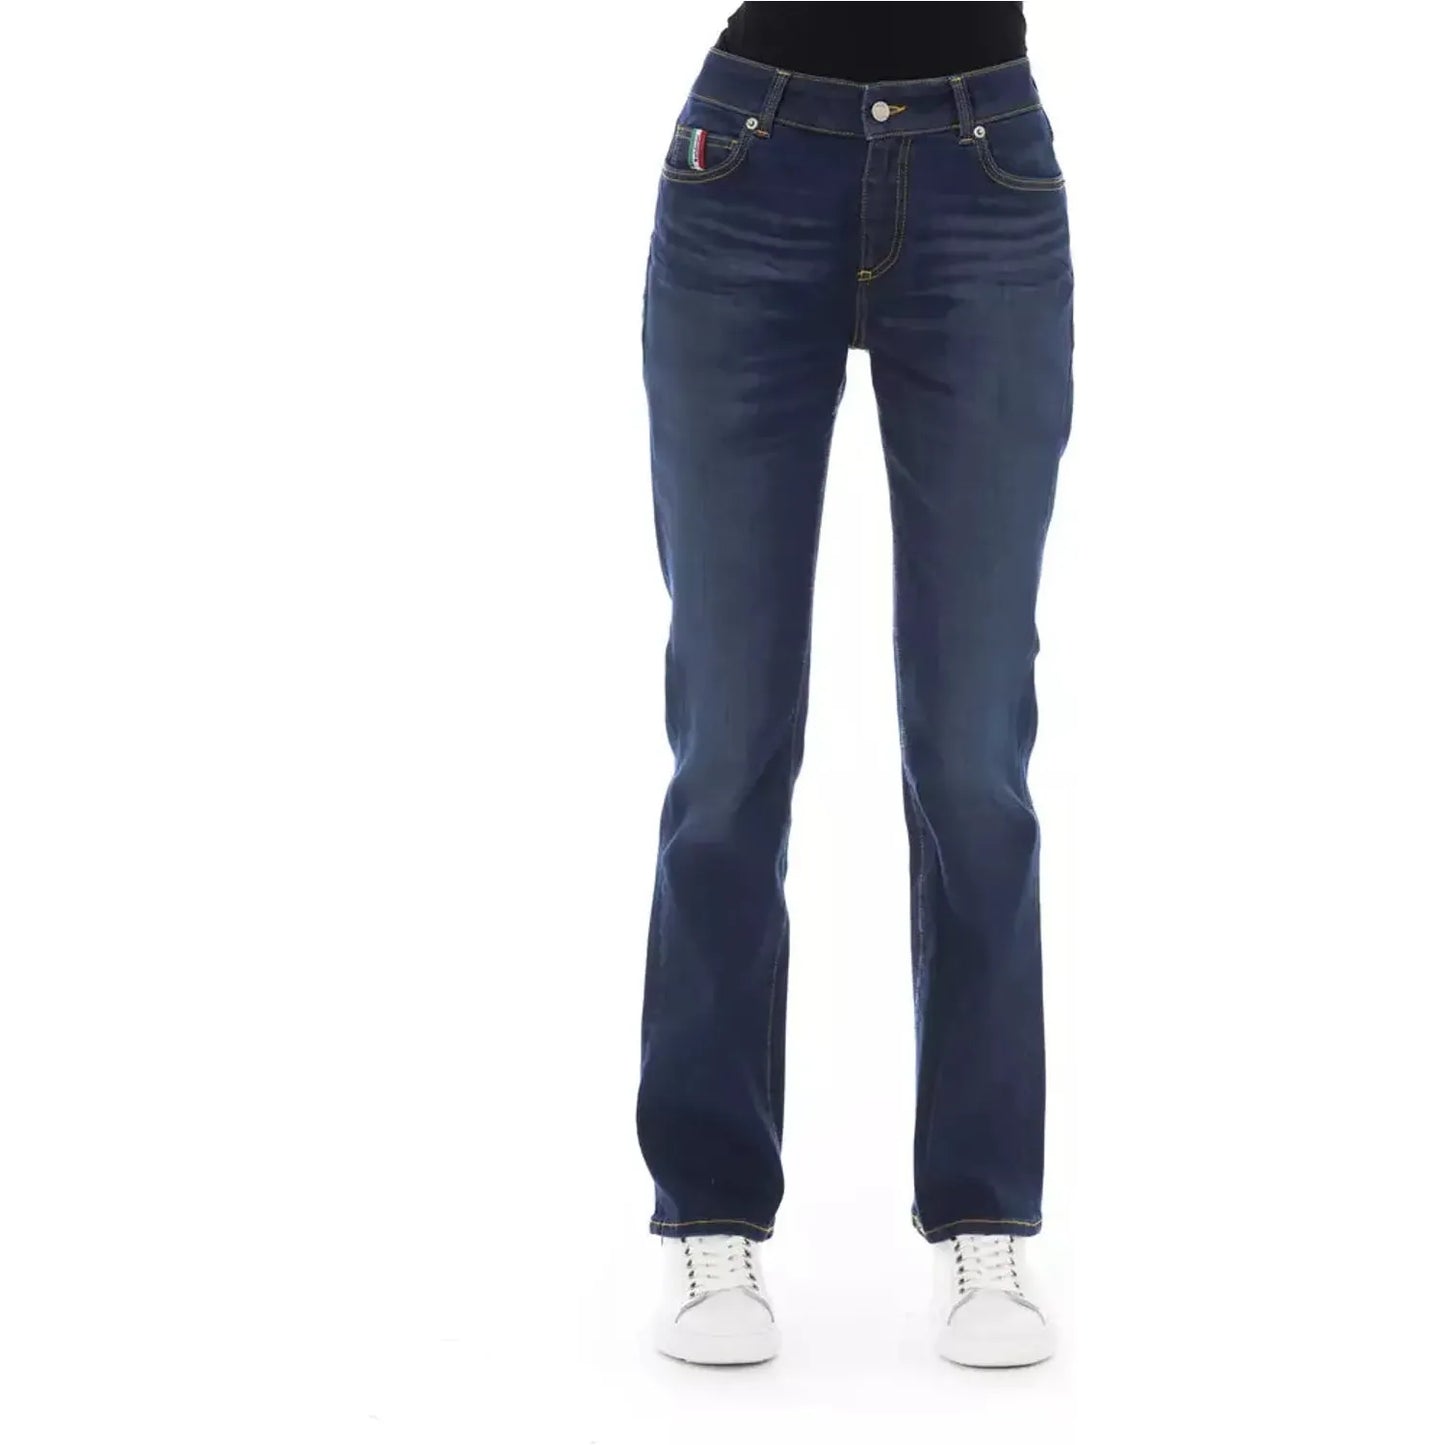 Baldinini Trend Chic Tricolor Pocket Jeans blue-cotton-jeans-pant-67 product-23113-1262847448-25-a44de393-980.webp